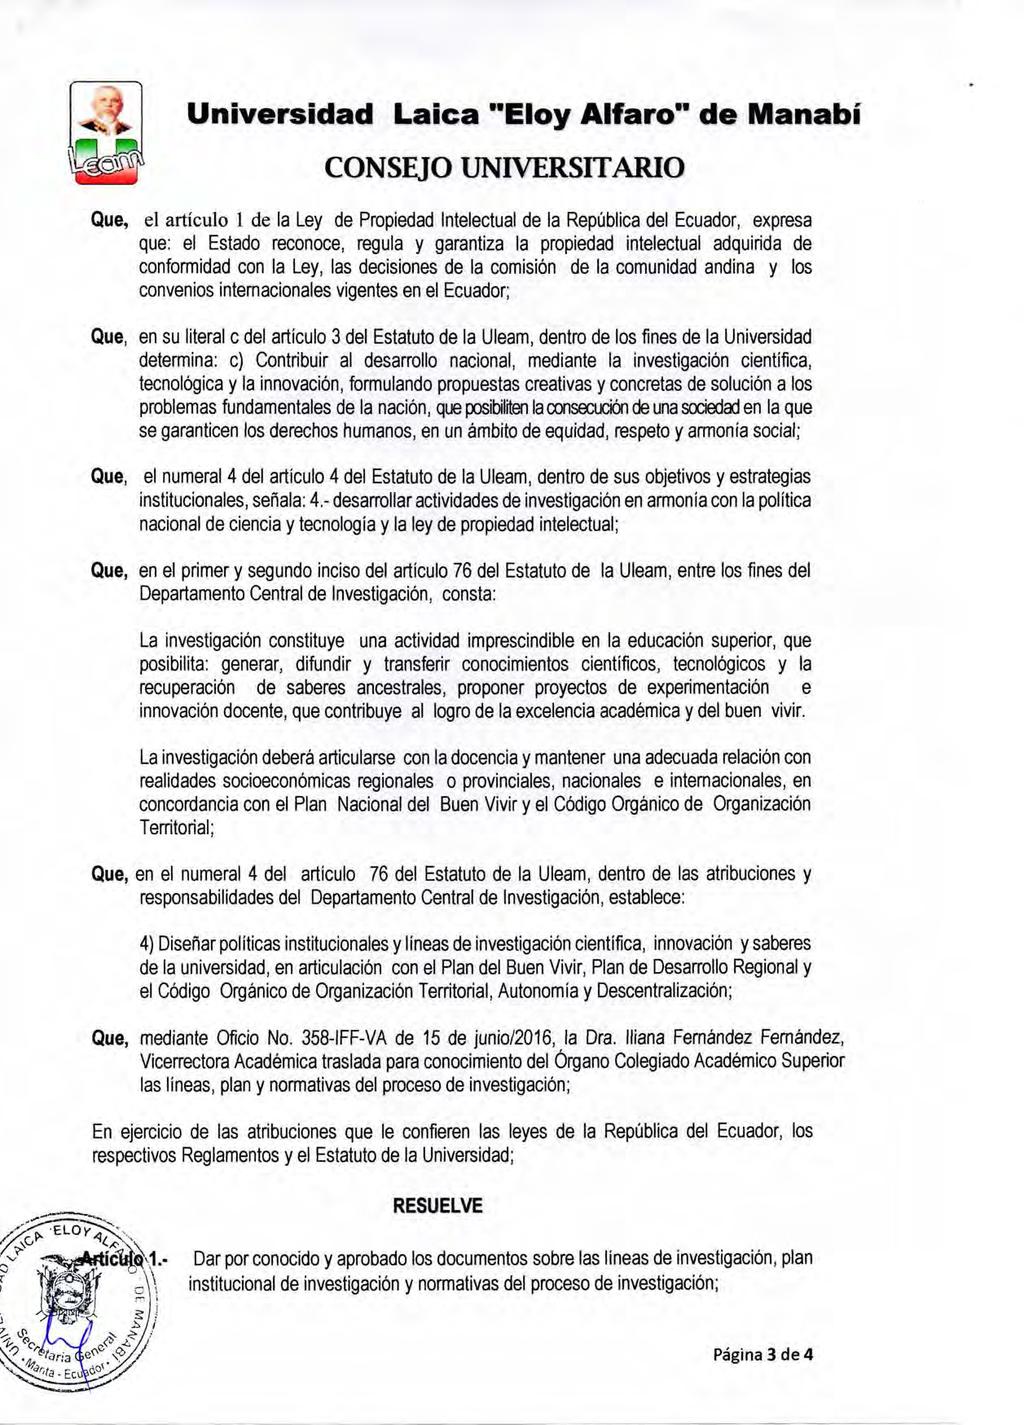 Universidad Laica "Eloy Alfaro" de Manabí CONSEJO UNIVERSITARIO Que, el artículo 1 de la Ley de Propiedad Intelectual de la República del Ecuador, expresa que: el Estado reconoce, regula y garantiza